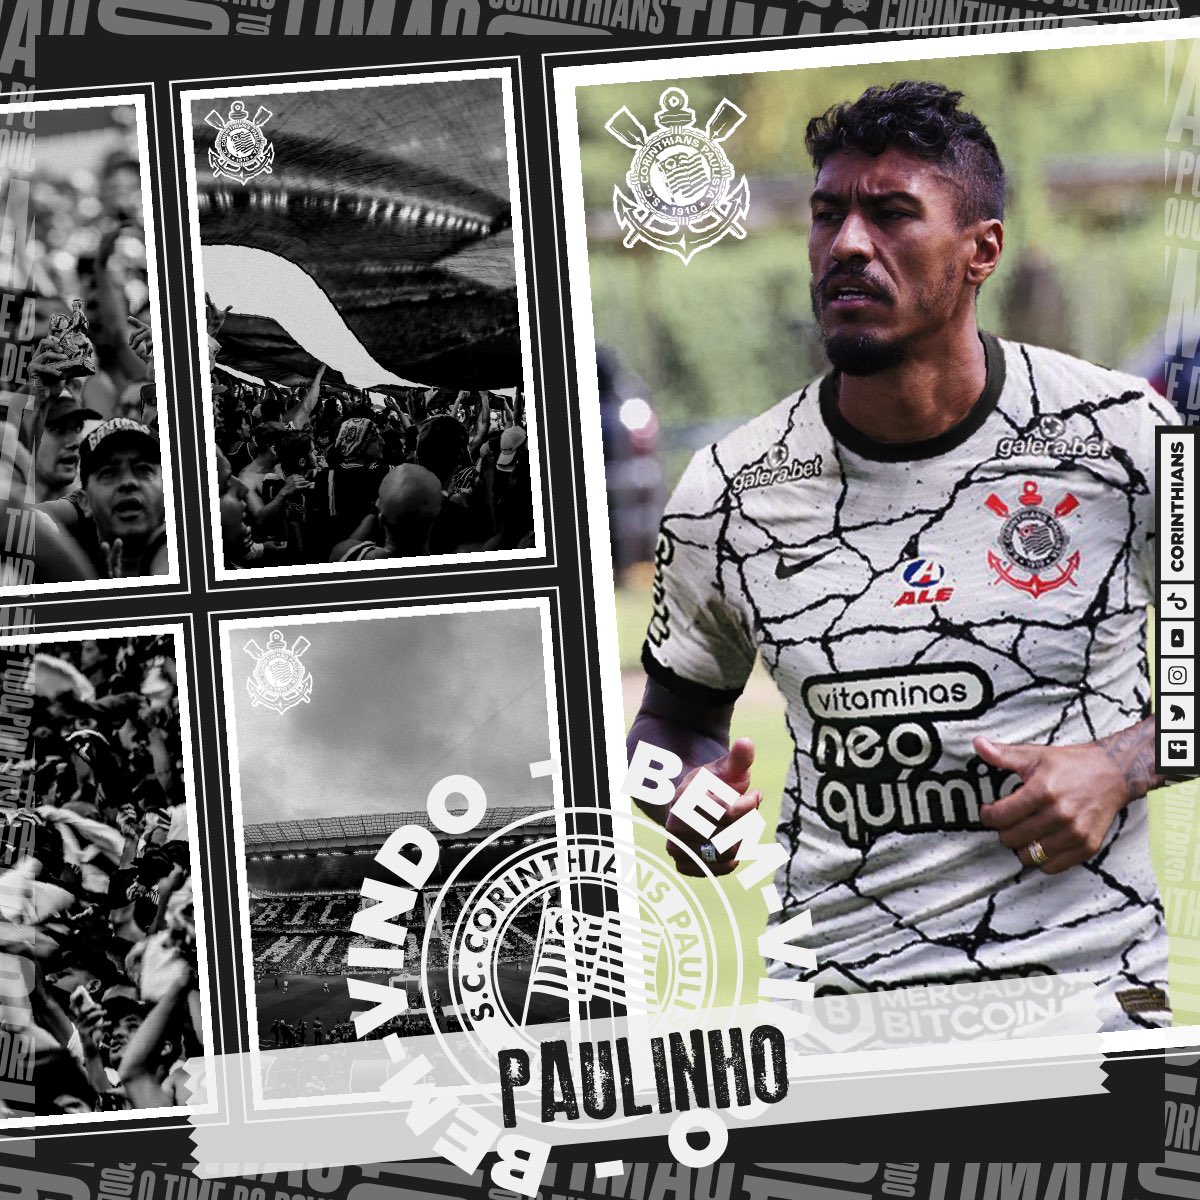 O encaixe do “novo” Paulinho no Corinthians: porquê não mais um médio e sim um atacante?